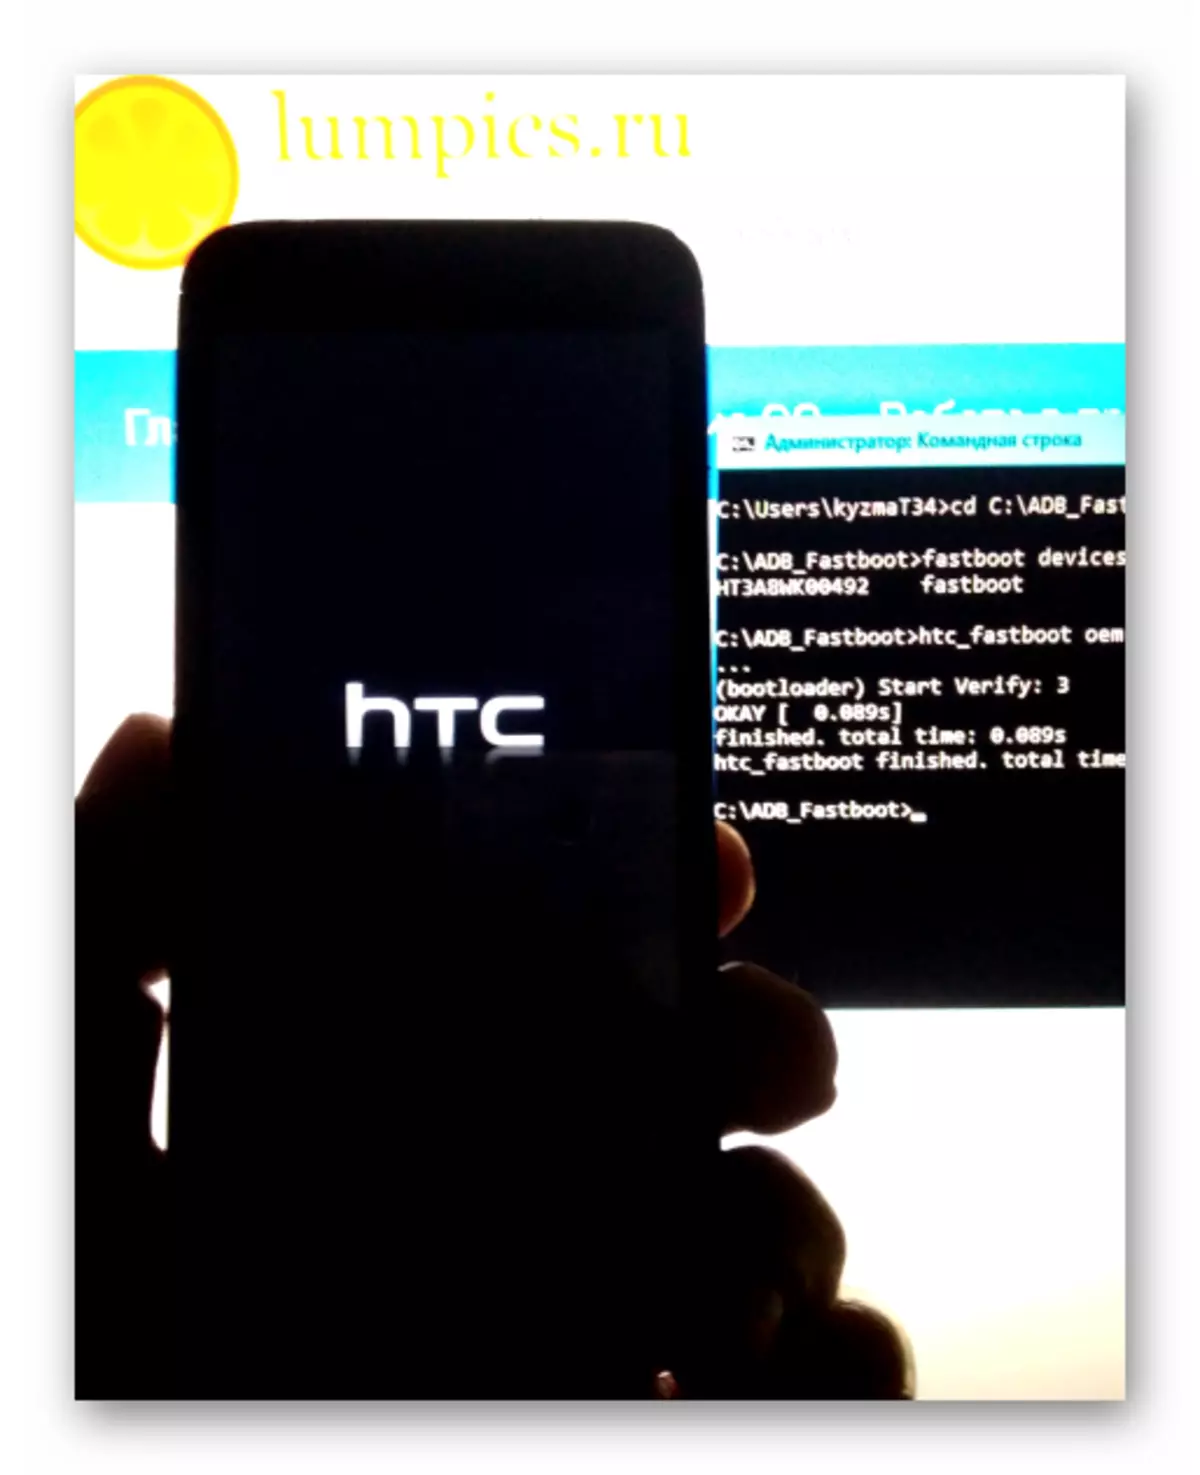 HTC Loscht 601 Firmware via FastBoot - Smartphone un de gewënschte Modus iwwersat - RUU